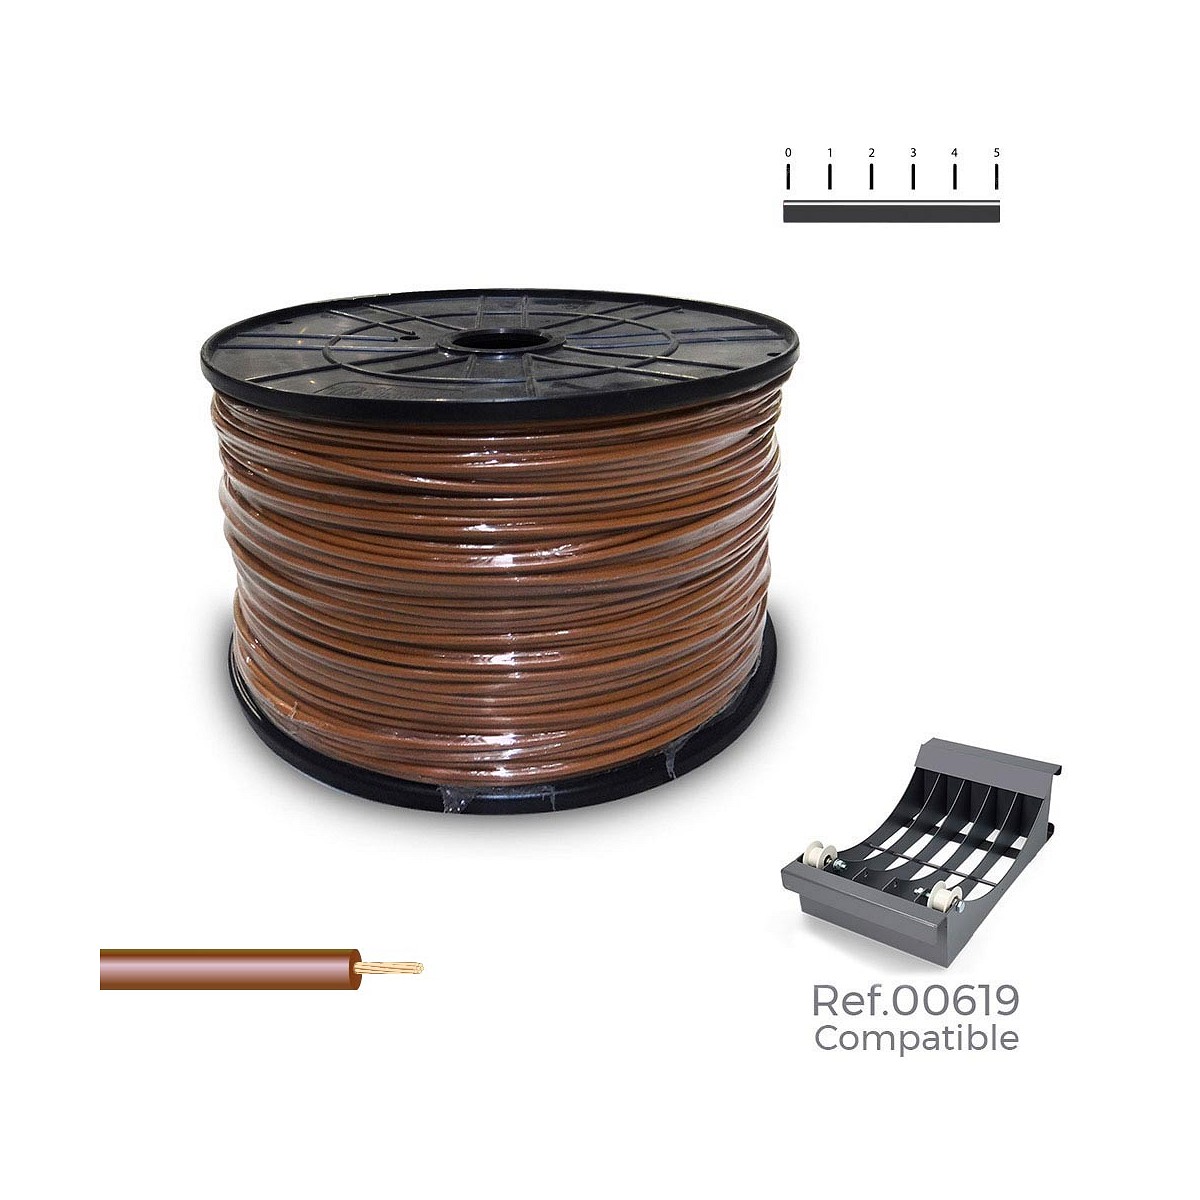 Carrete cablecillo flexible 2,5mm marron 800m (bobina grande ø400x200mm)